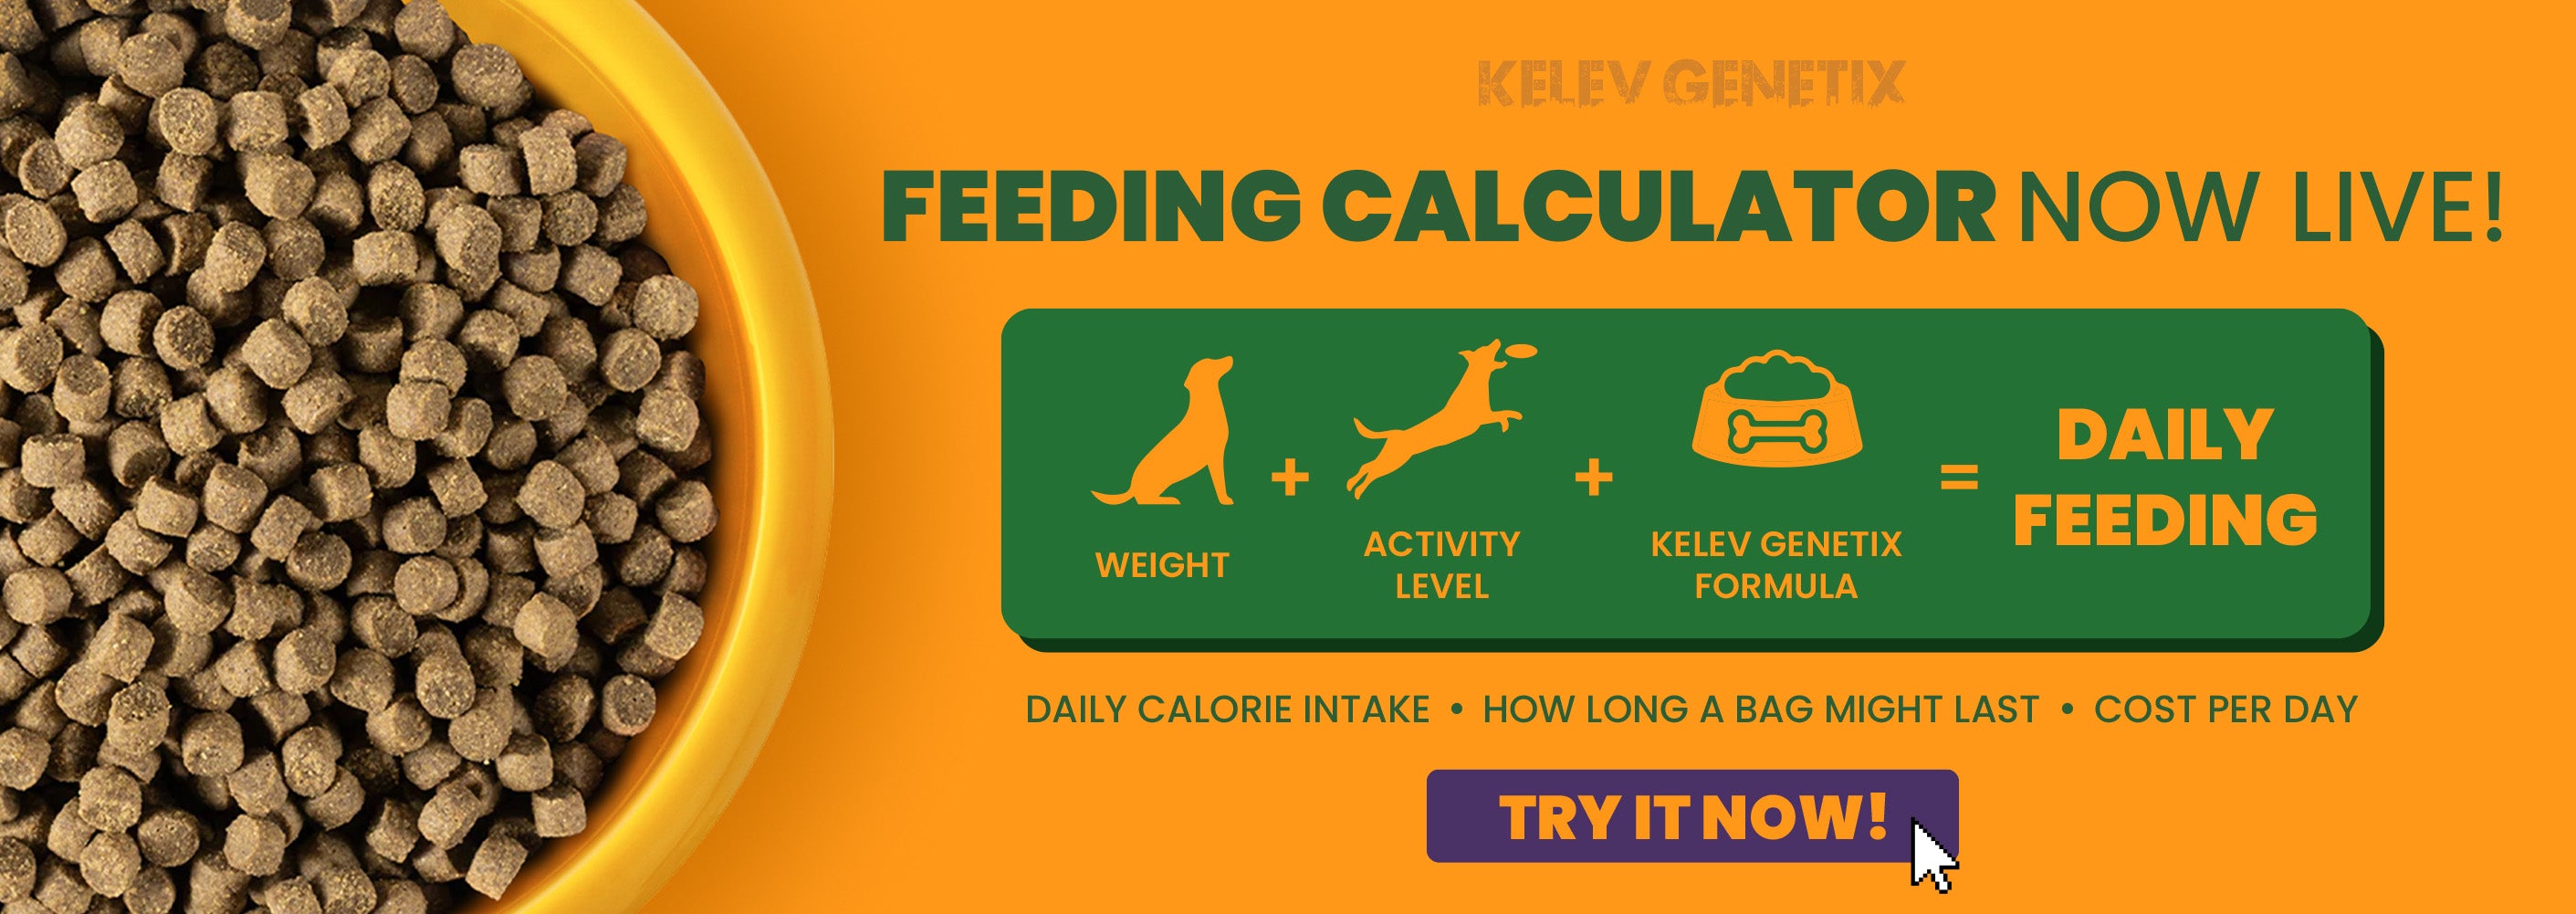 feeding-calculator-kelev-genetix